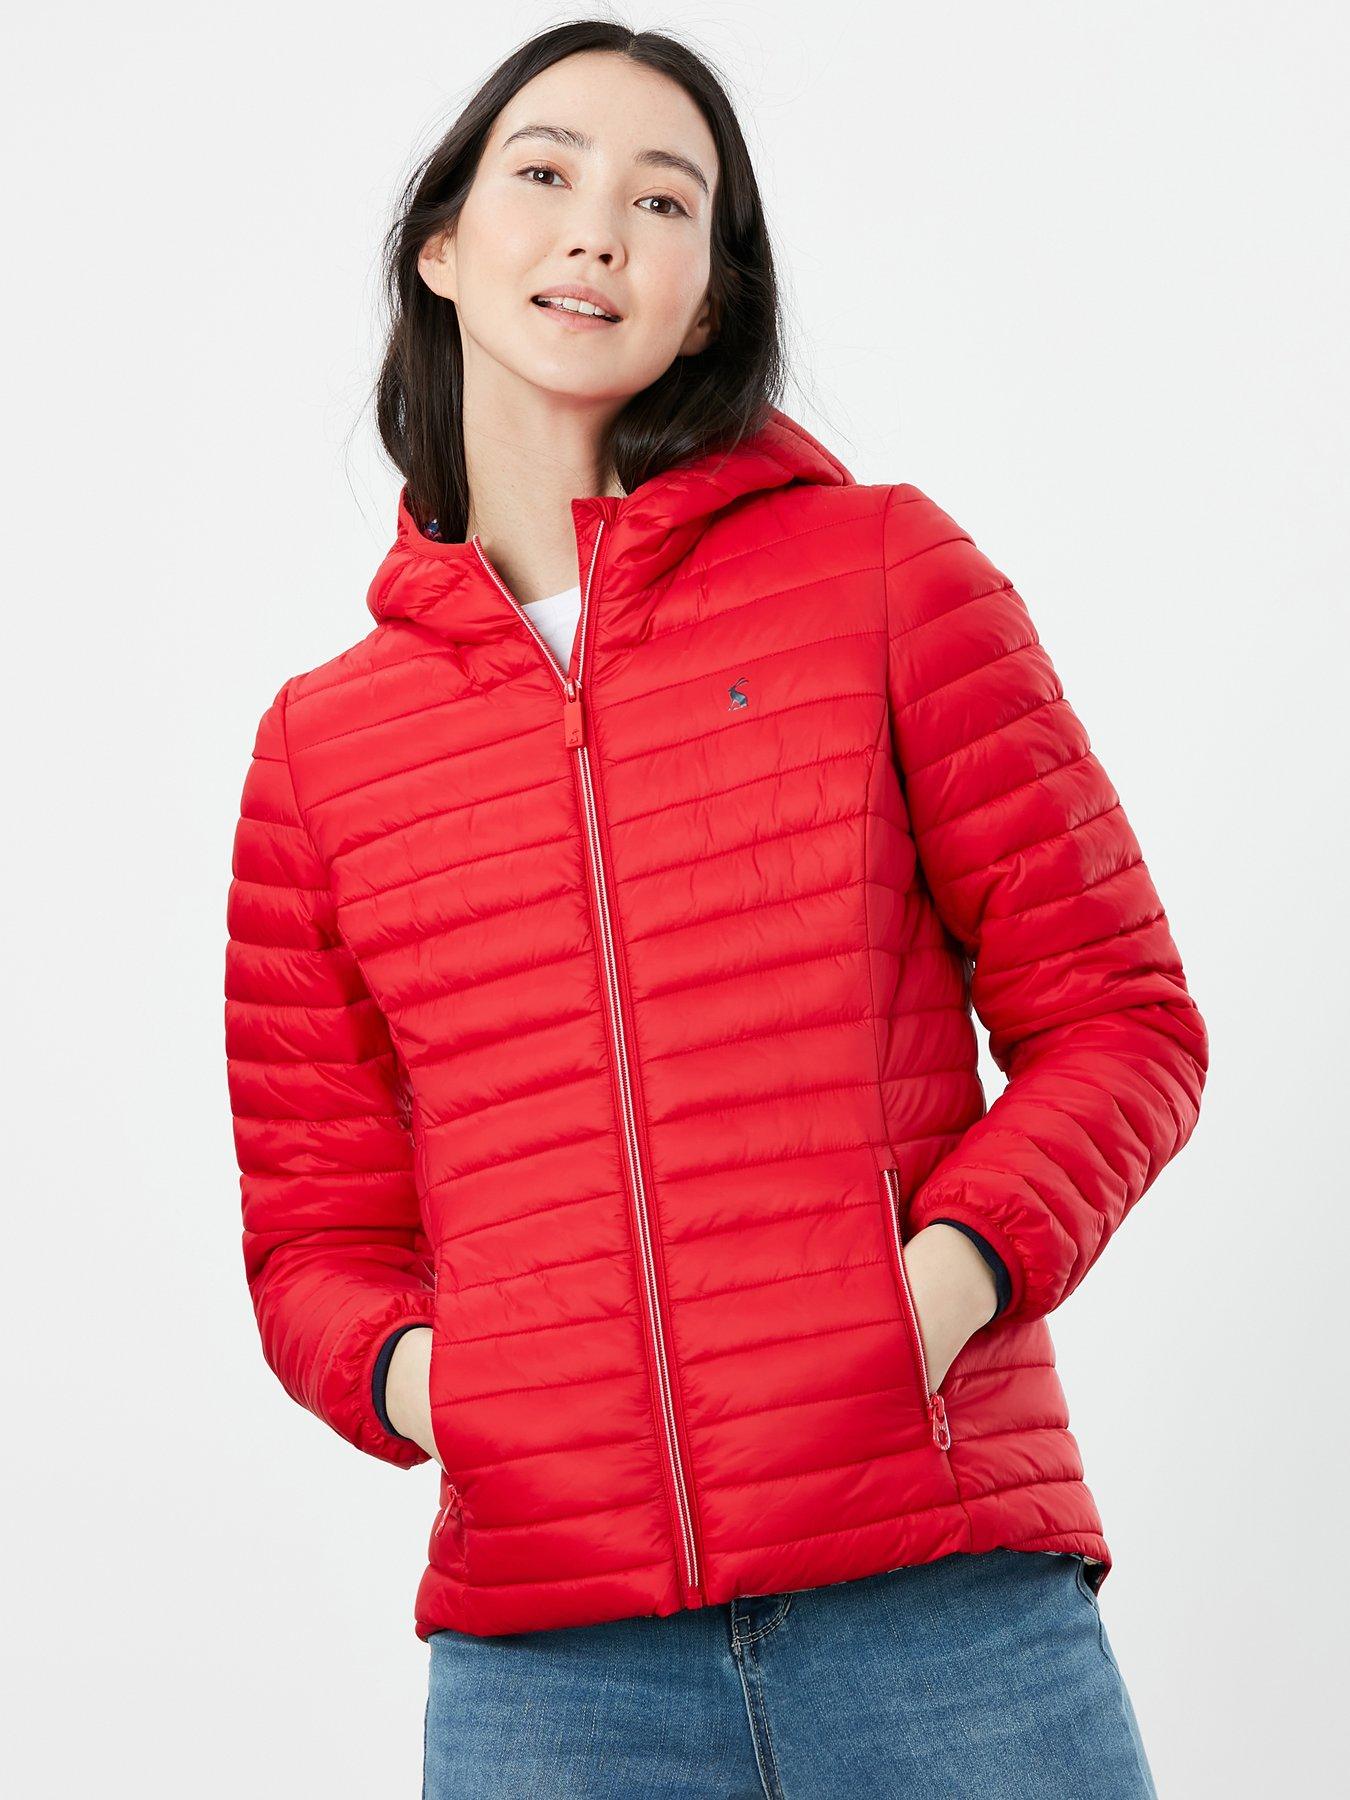  Snug Packable Water Resistant Jacket - Red